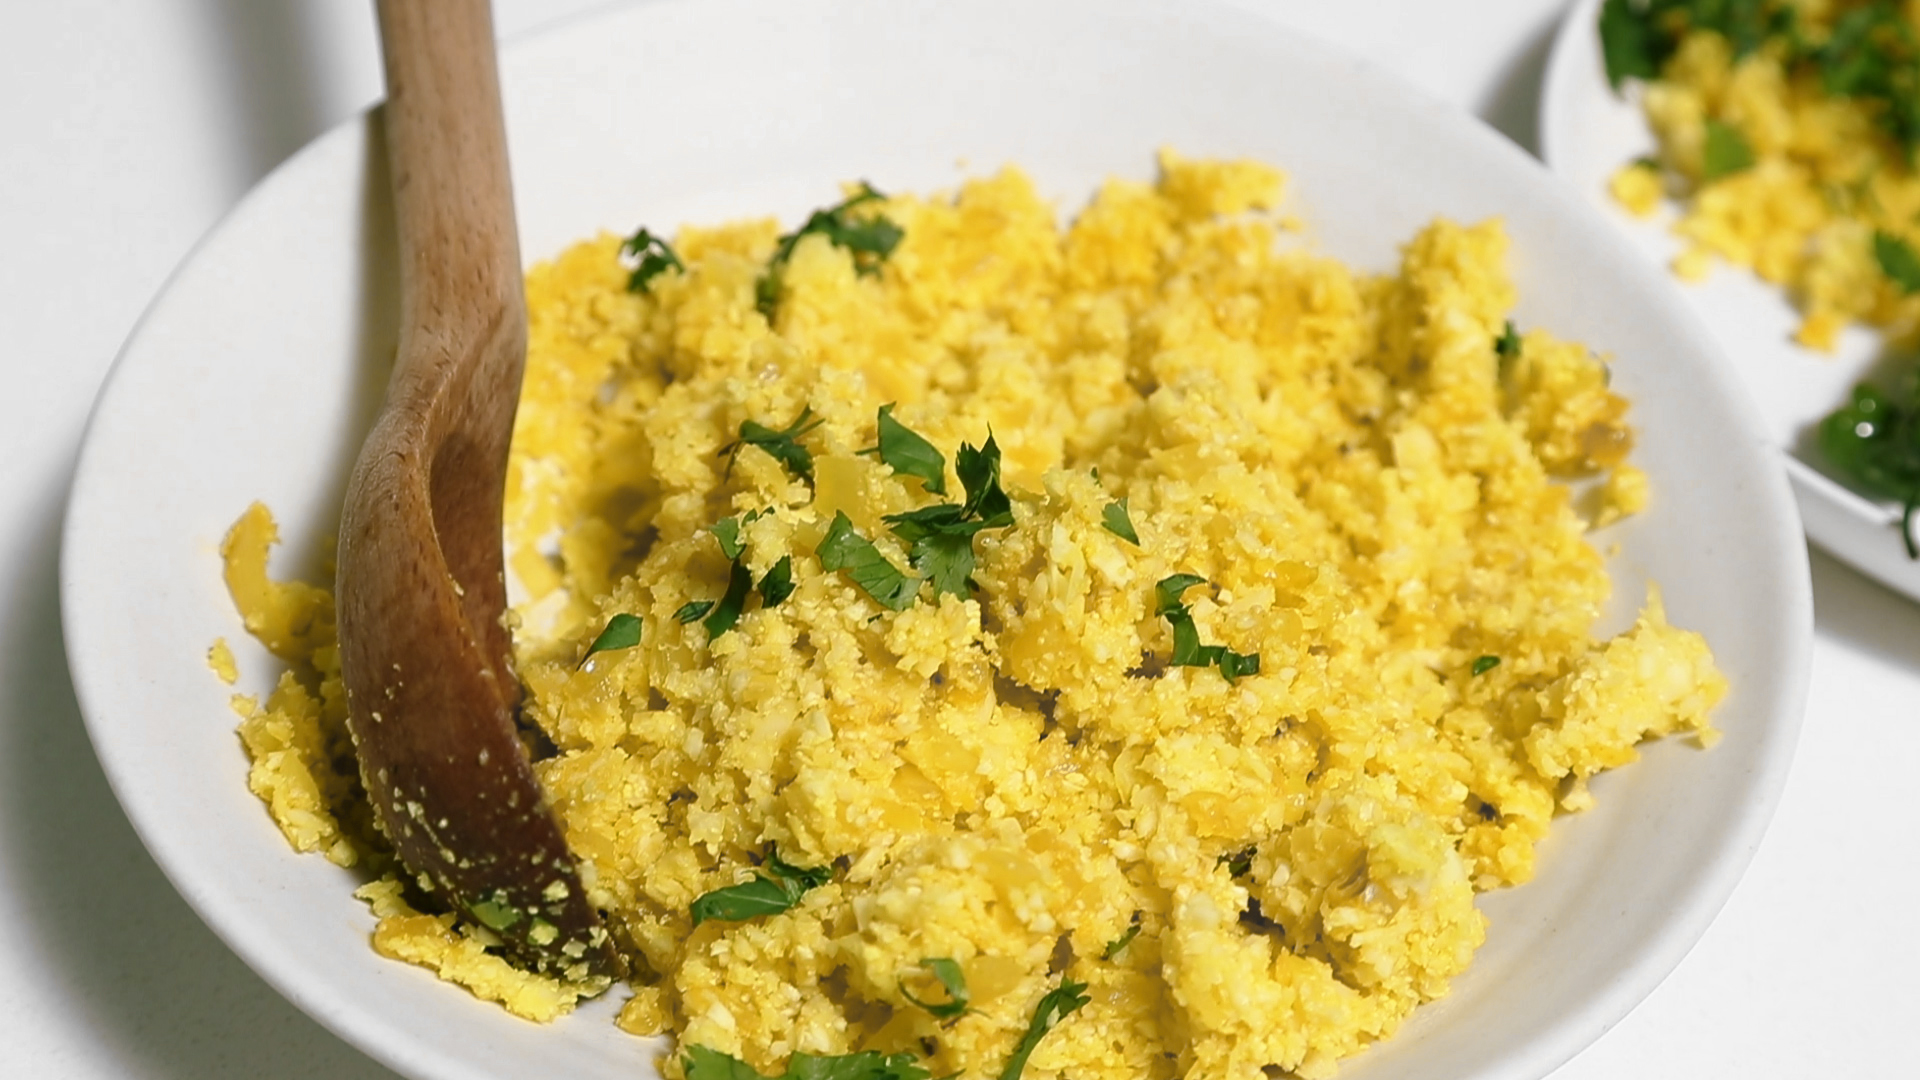 How to Make Turmeric Cauliflower Rice